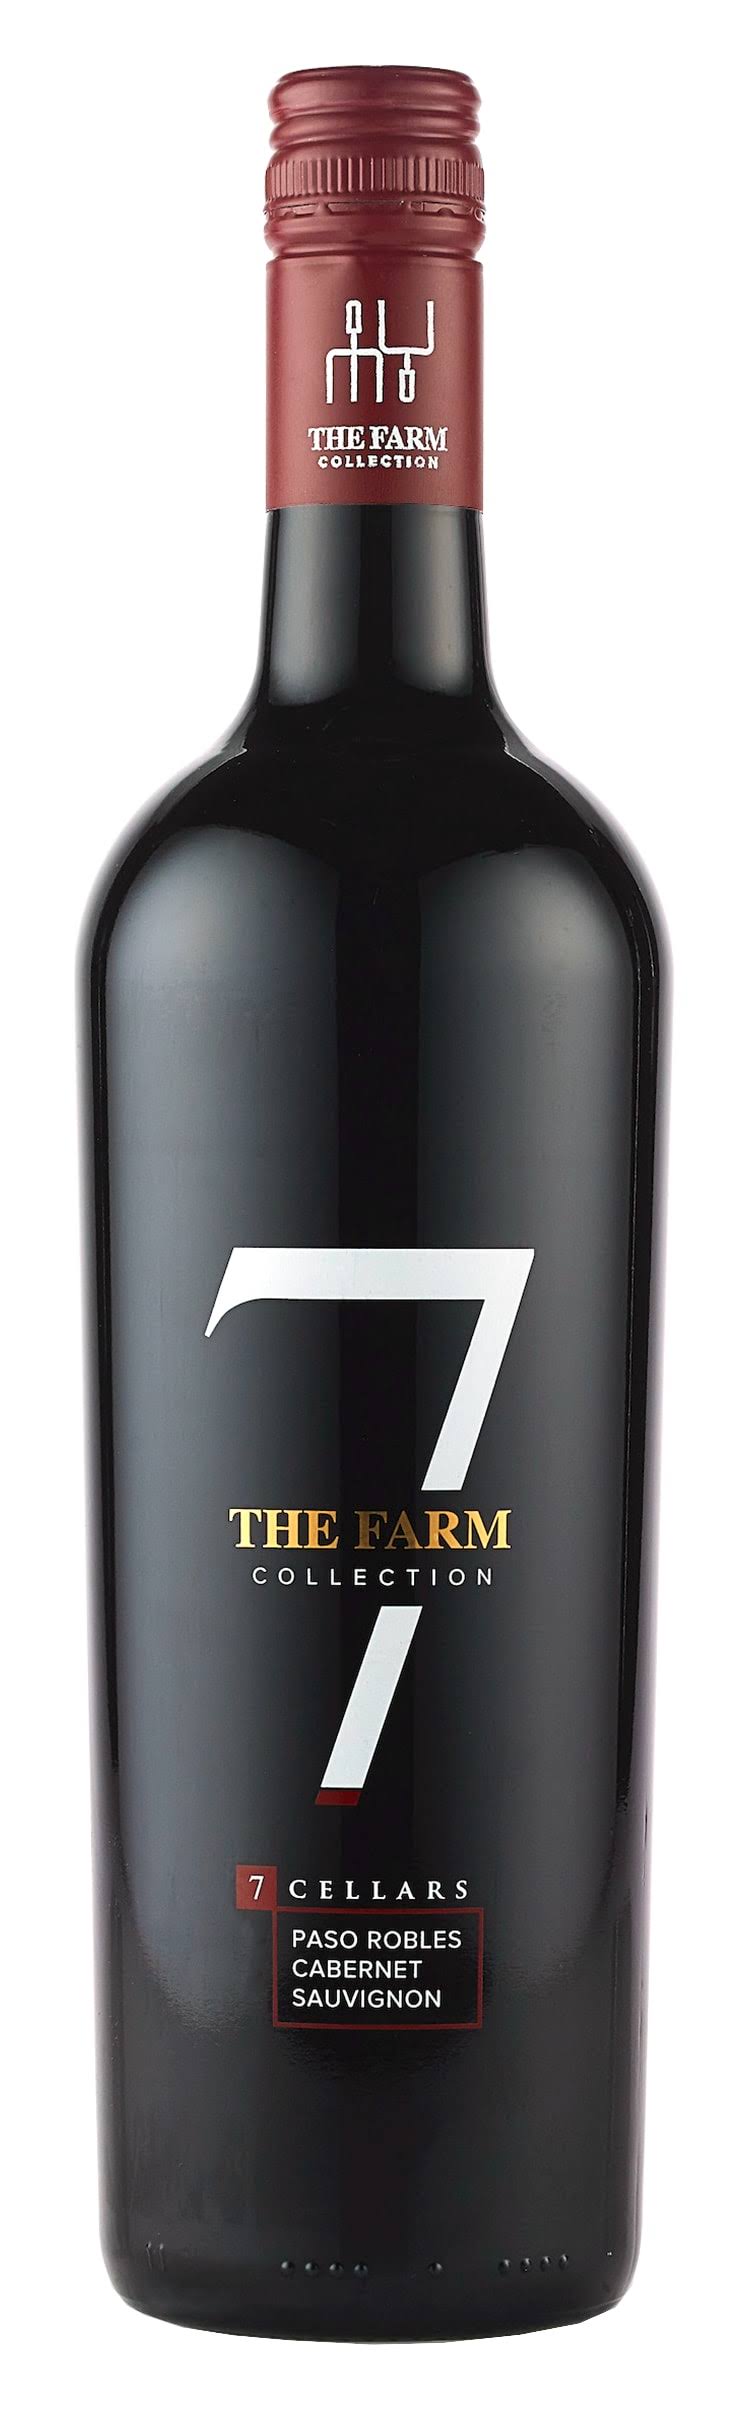 7 Cellars The Farm Collection Cabernet Sauvignon 2020 - 750ml